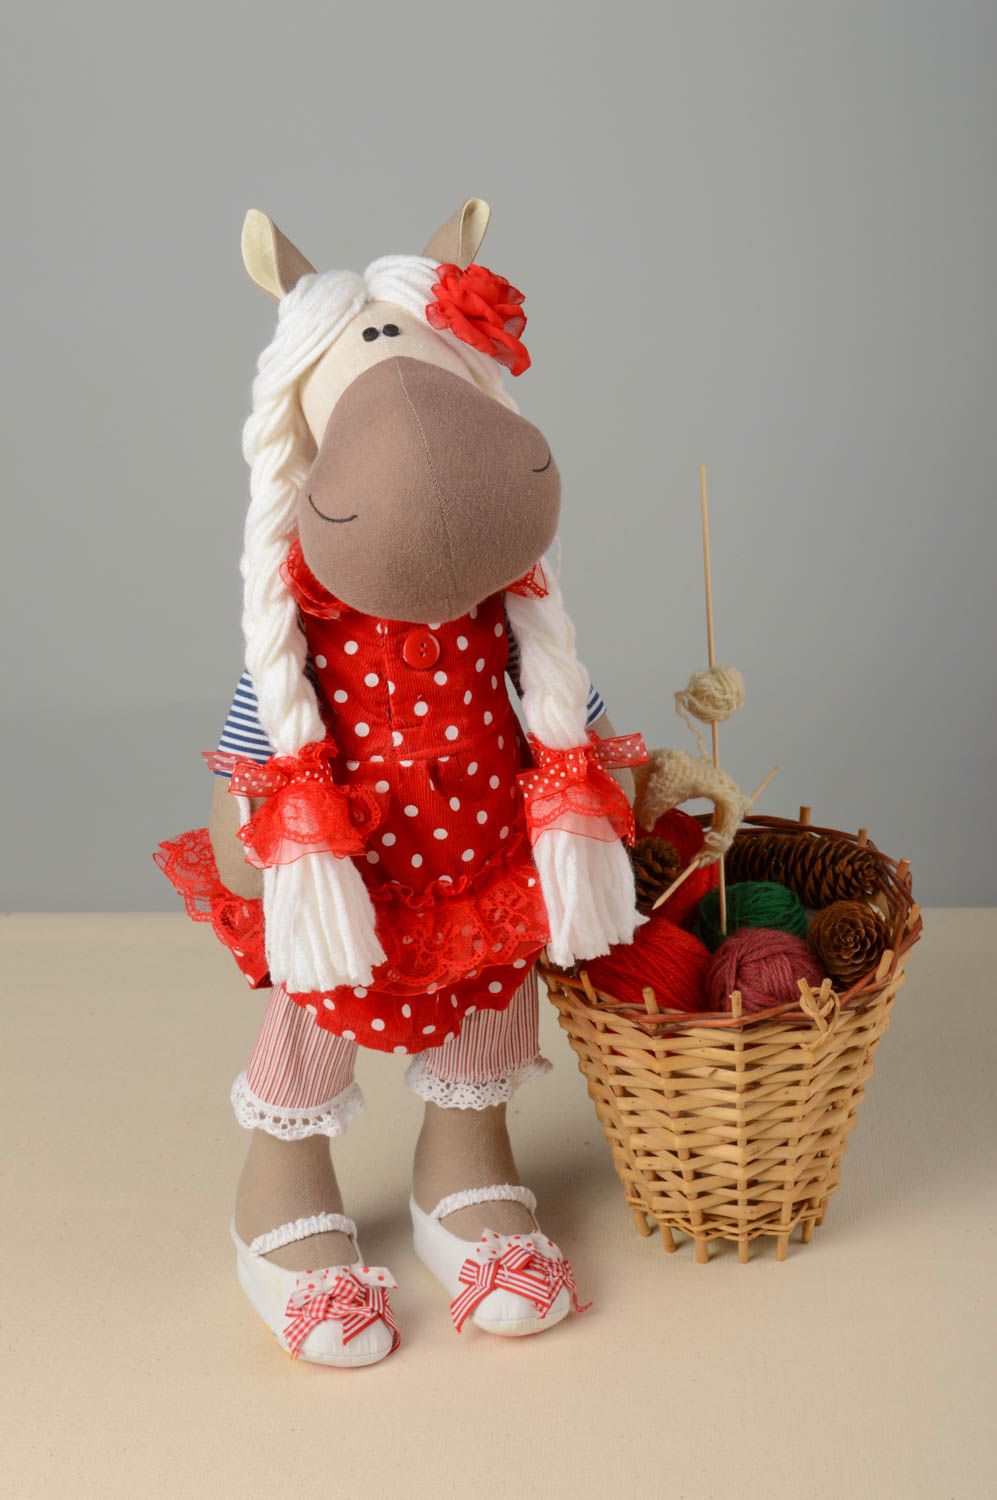 Textil Kuscheltier Pferd niedlich Spielzeug für Kinder und Dekor nette Seefrau foto 1